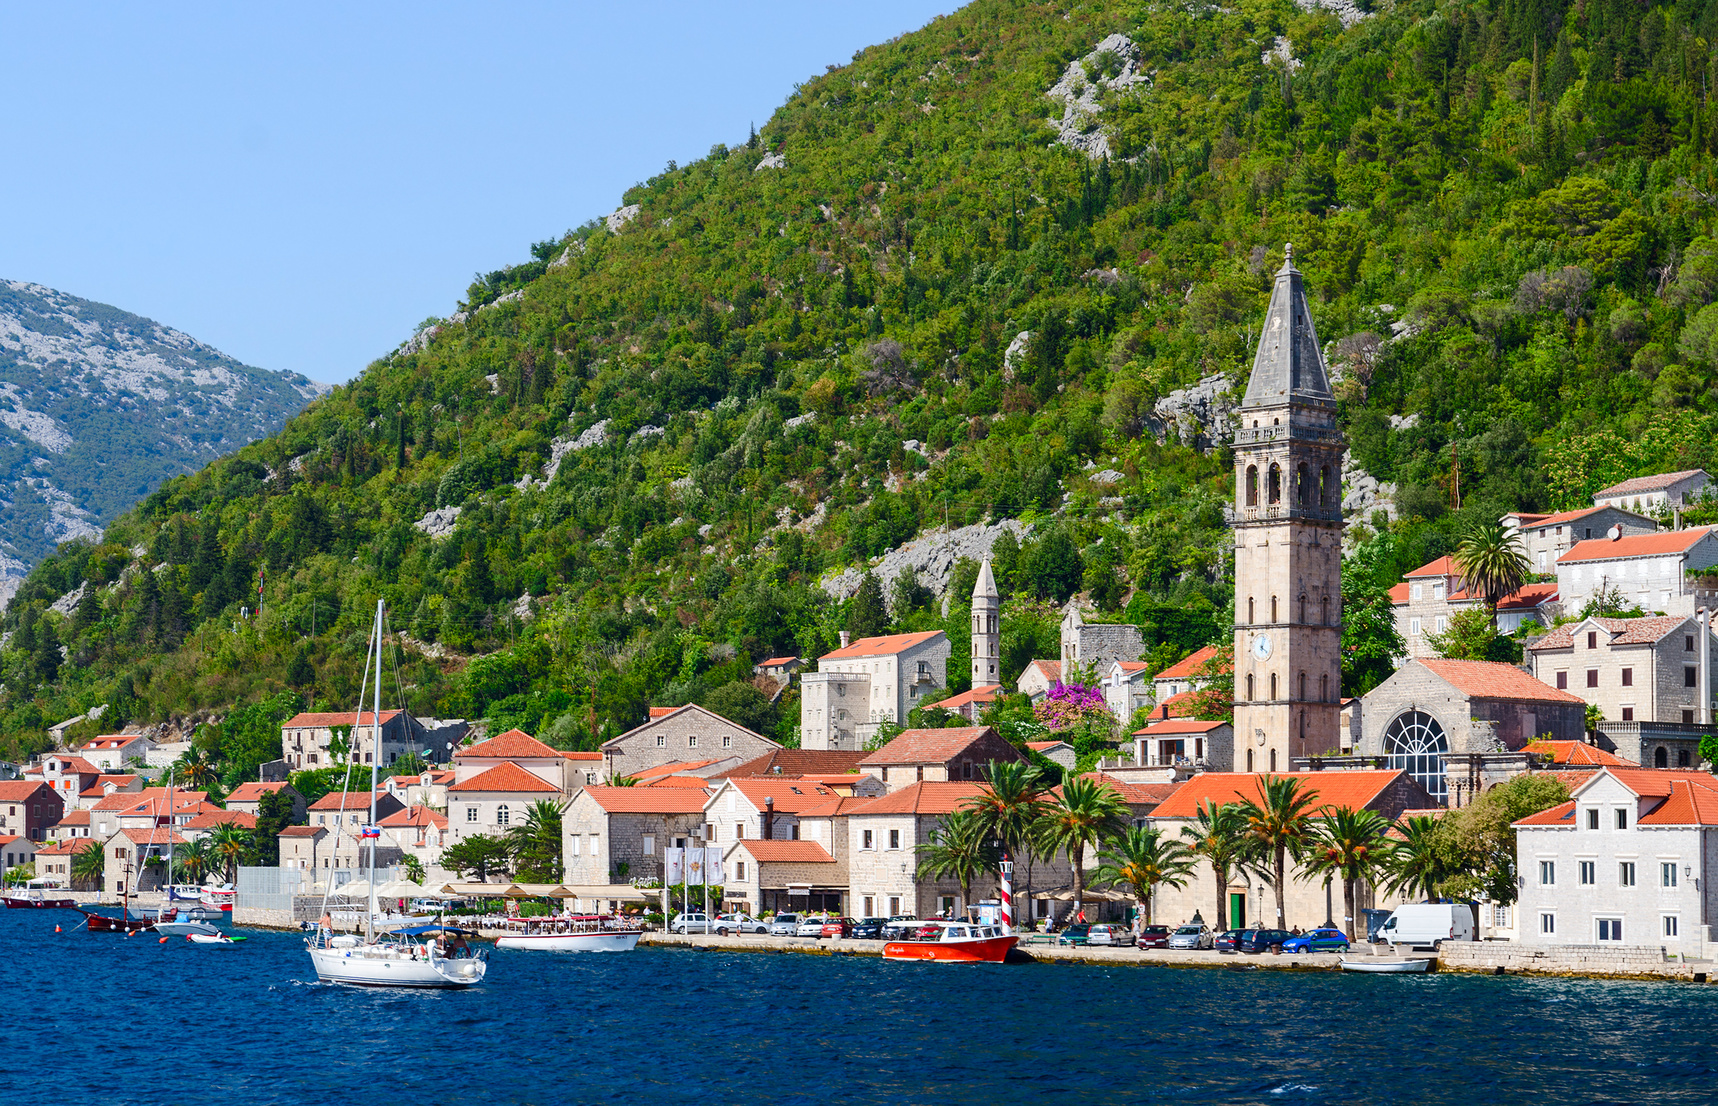 12 destinos principales alrededor de la bahía de Kotor en Montenegro